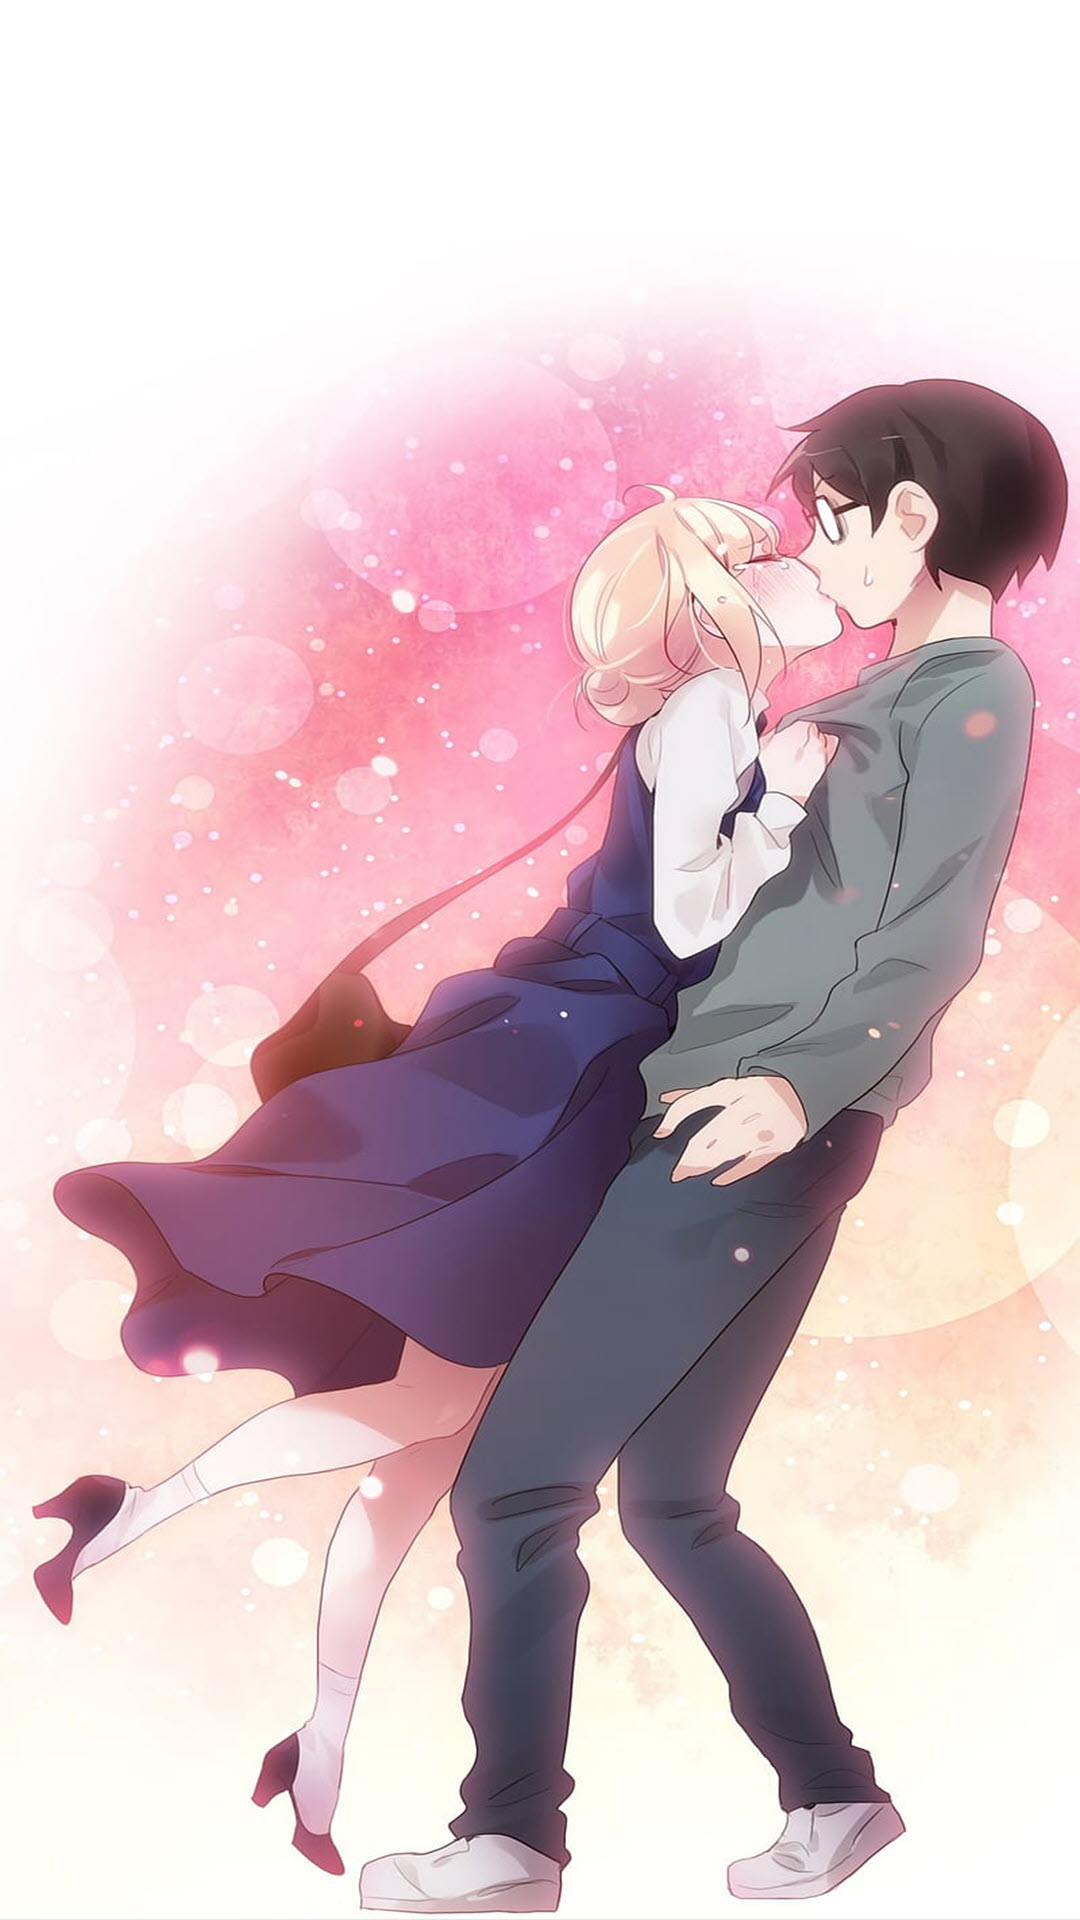 Những hình nền cặp đôi anime đầy tình cảm sẽ khiến bạn phải trầm trồ. Hãy xem và cảm nhận tình yêu ngọt ngào của các nhân vật trong anime mà bạn yêu thích.